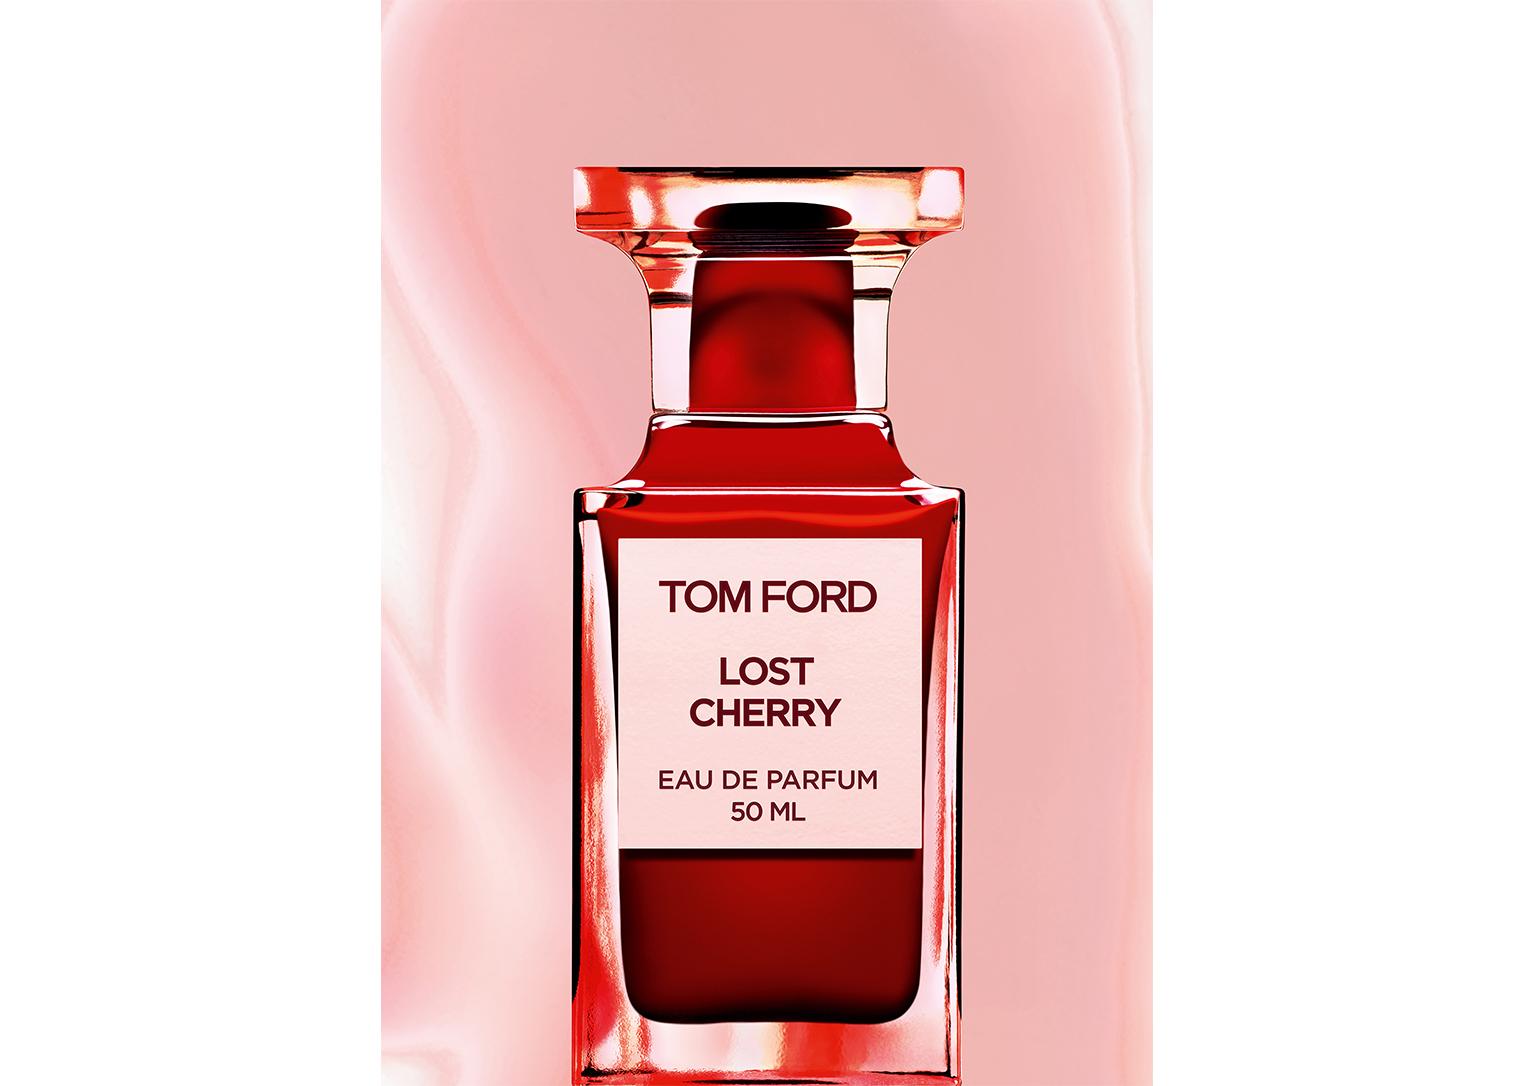 Tom Ford LOST CHERRY EAU DE PARFUM - Beauty 